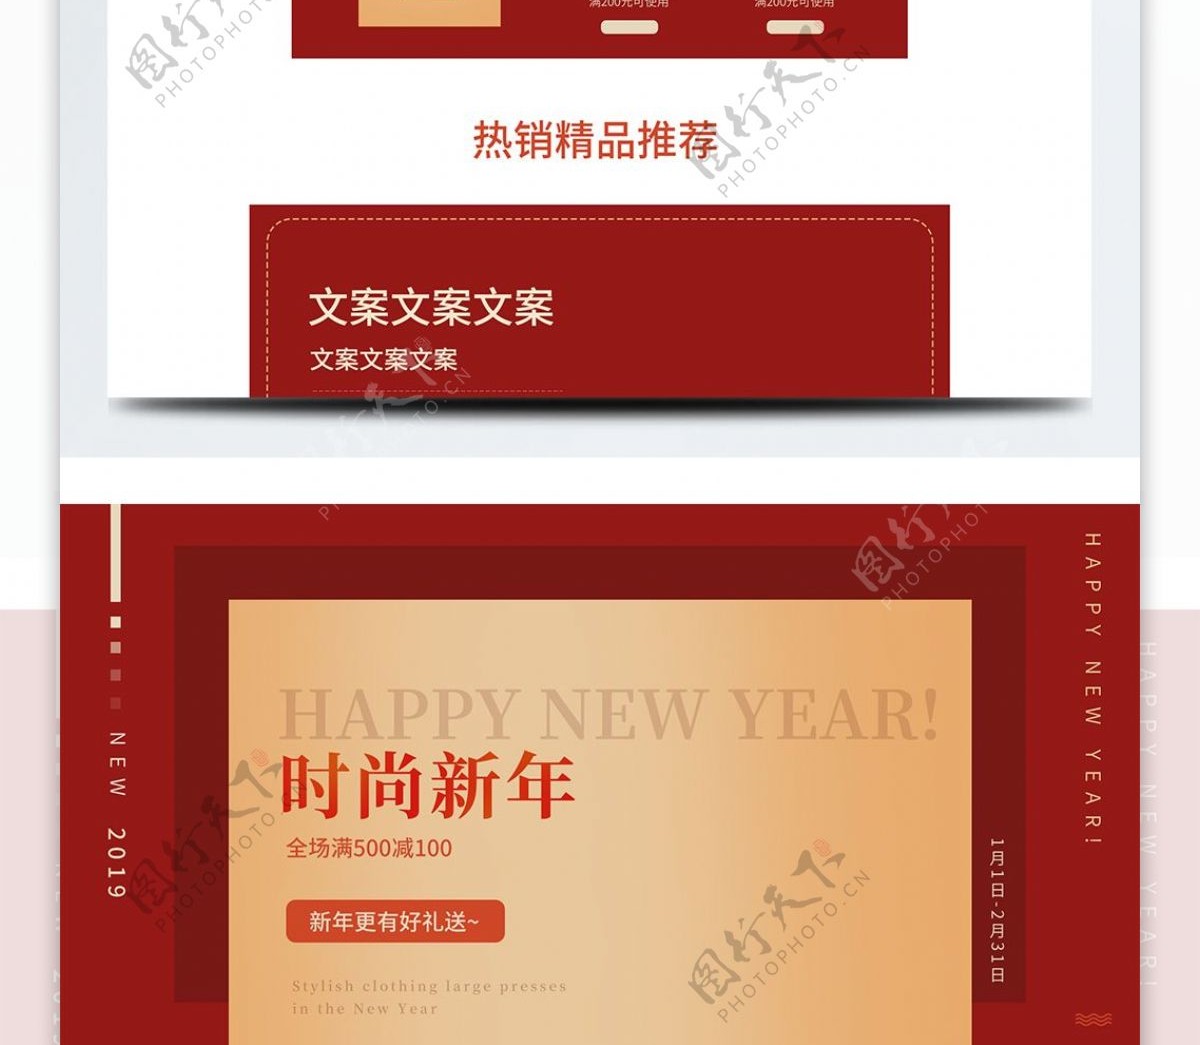 淘宝天猫简约时尚红色新年首页装修模板